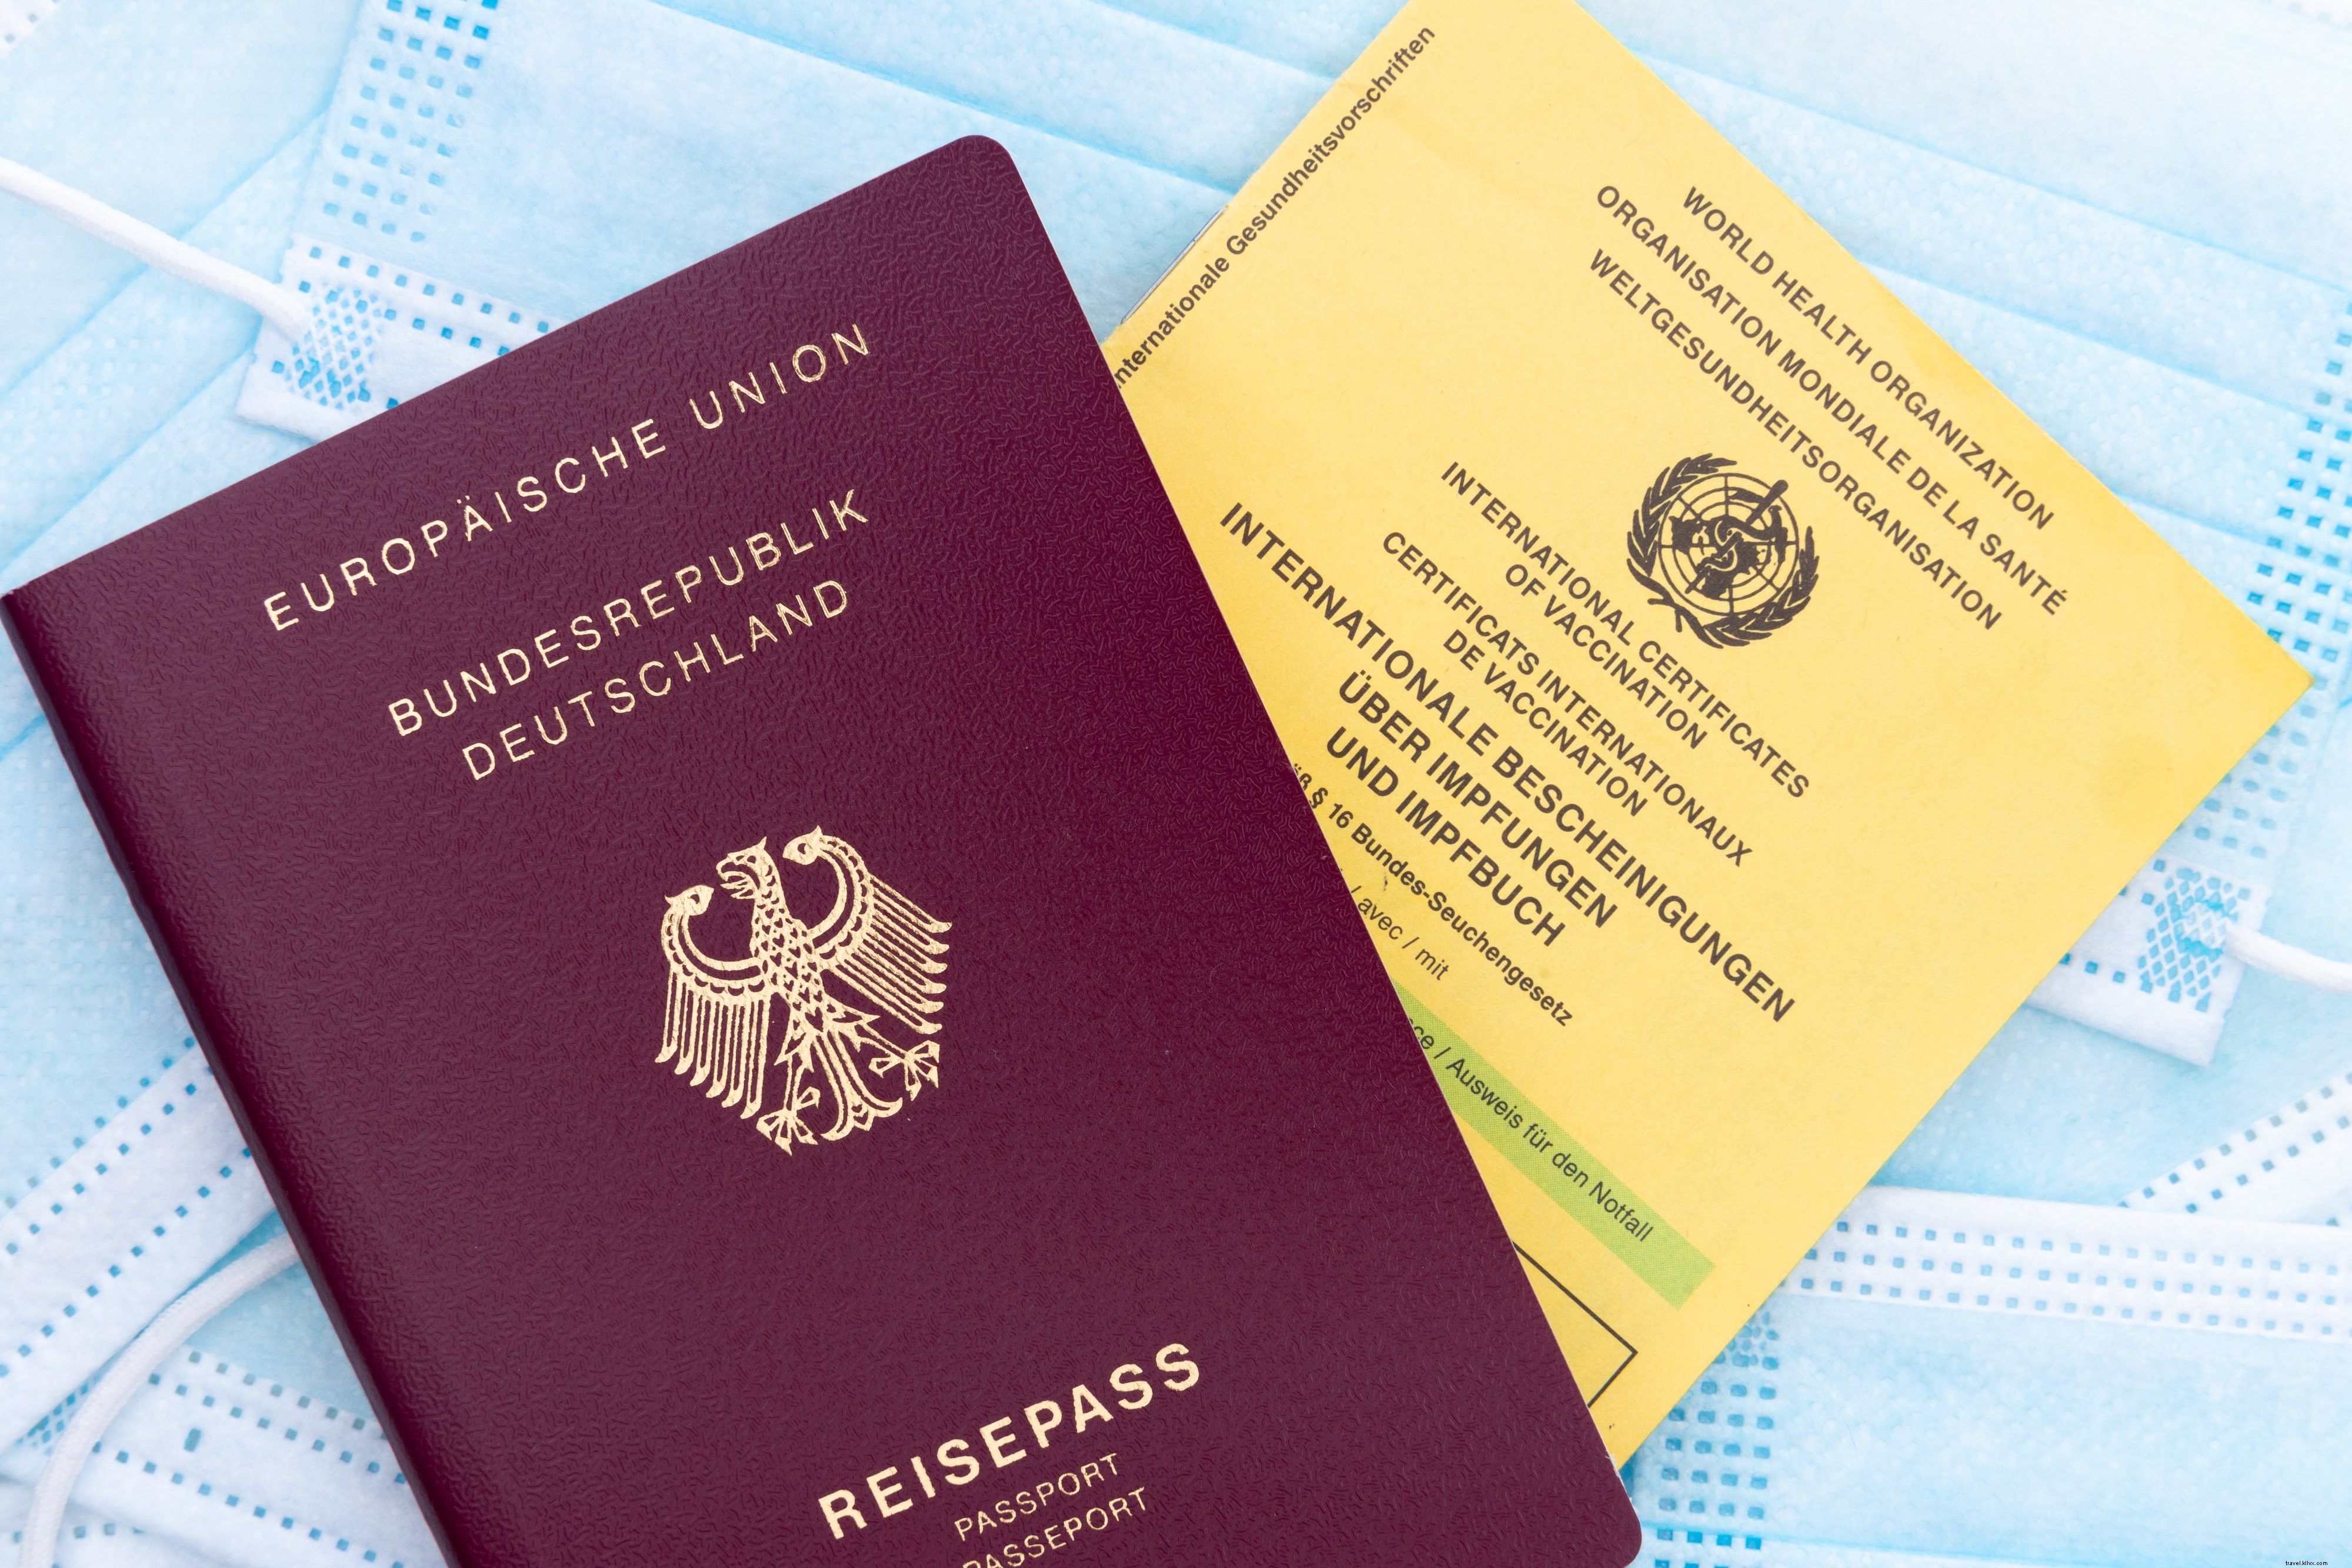 パスポートワクチンカードとフェイスマスクの写真のフラットレイ 